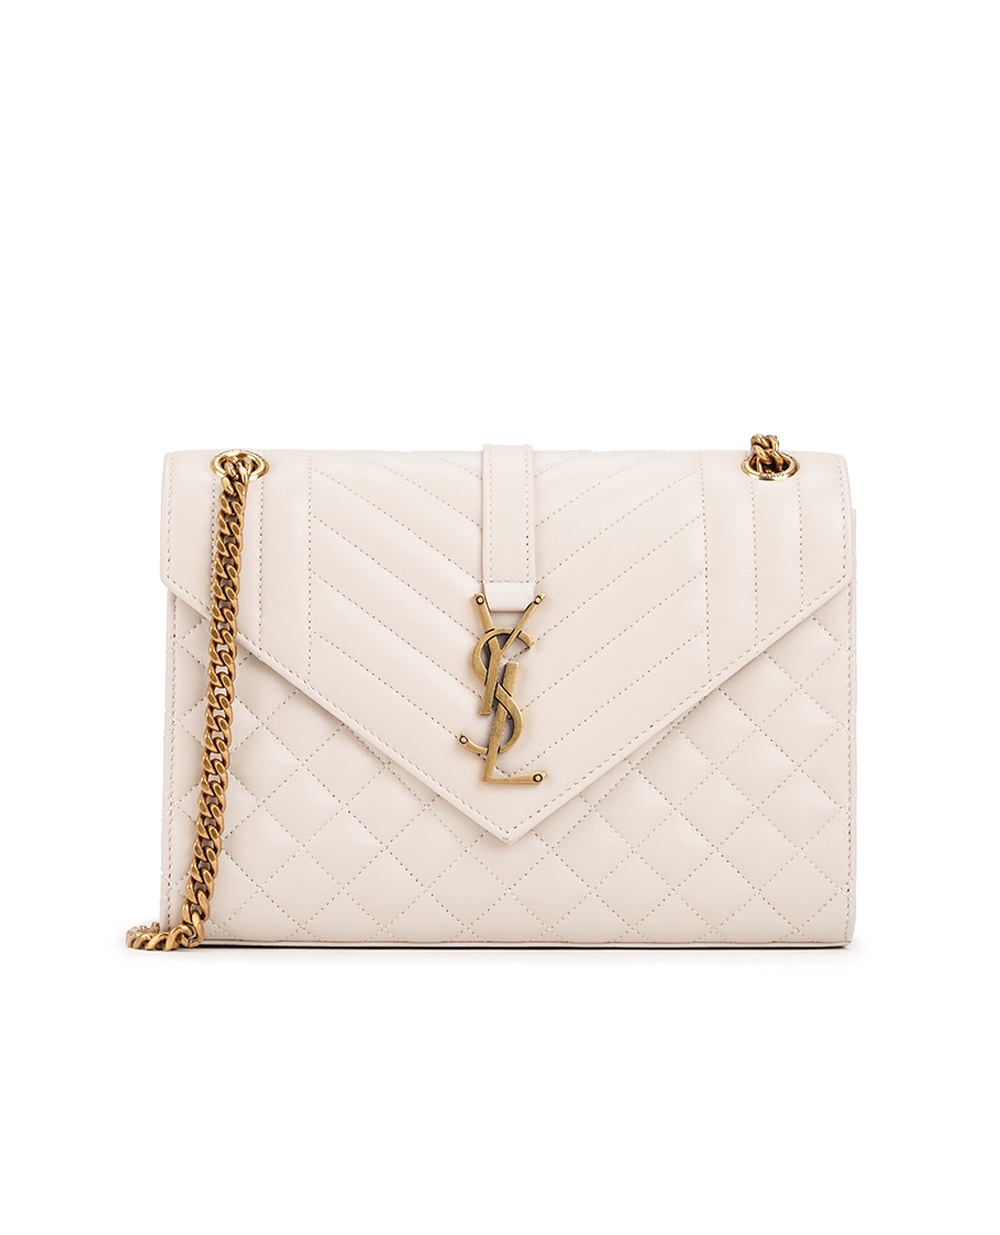 Кожаная сумка Envelope Medium Saint Laurent 600185-AACT7, бежевый цвет • Купить в интернет-магазине Kameron